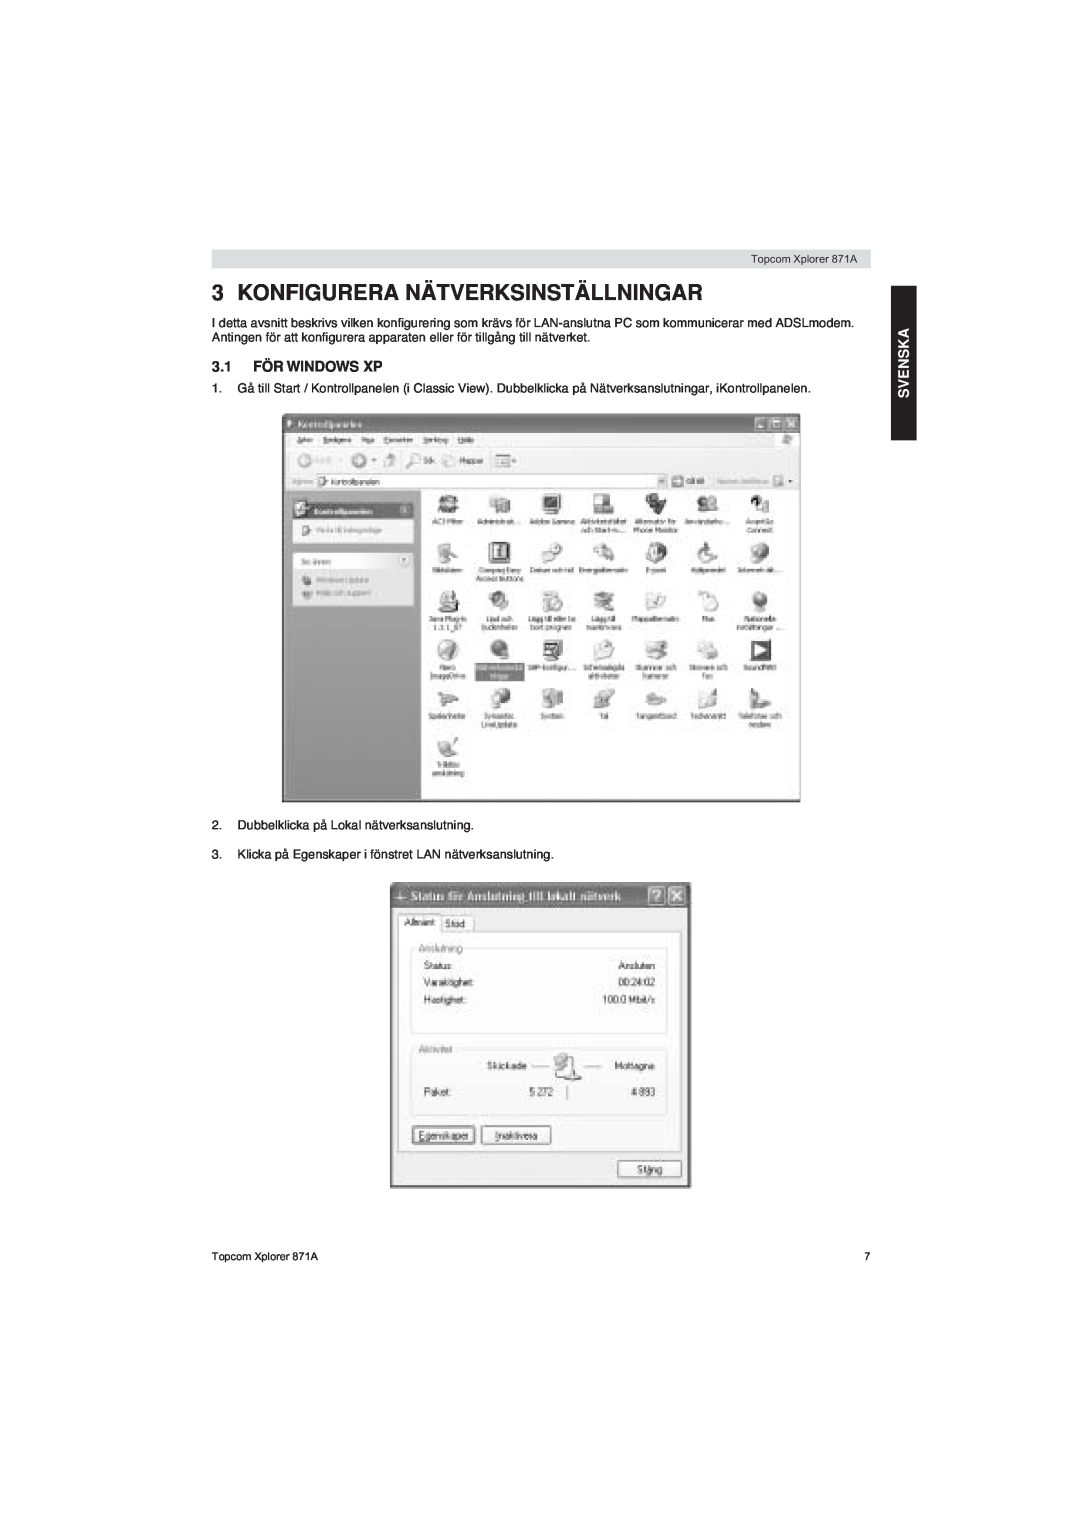 Topcom 871A manual Konfigurera Nätverksinställningar, 3.1 FÖR WINDOWS XP, Svenska 